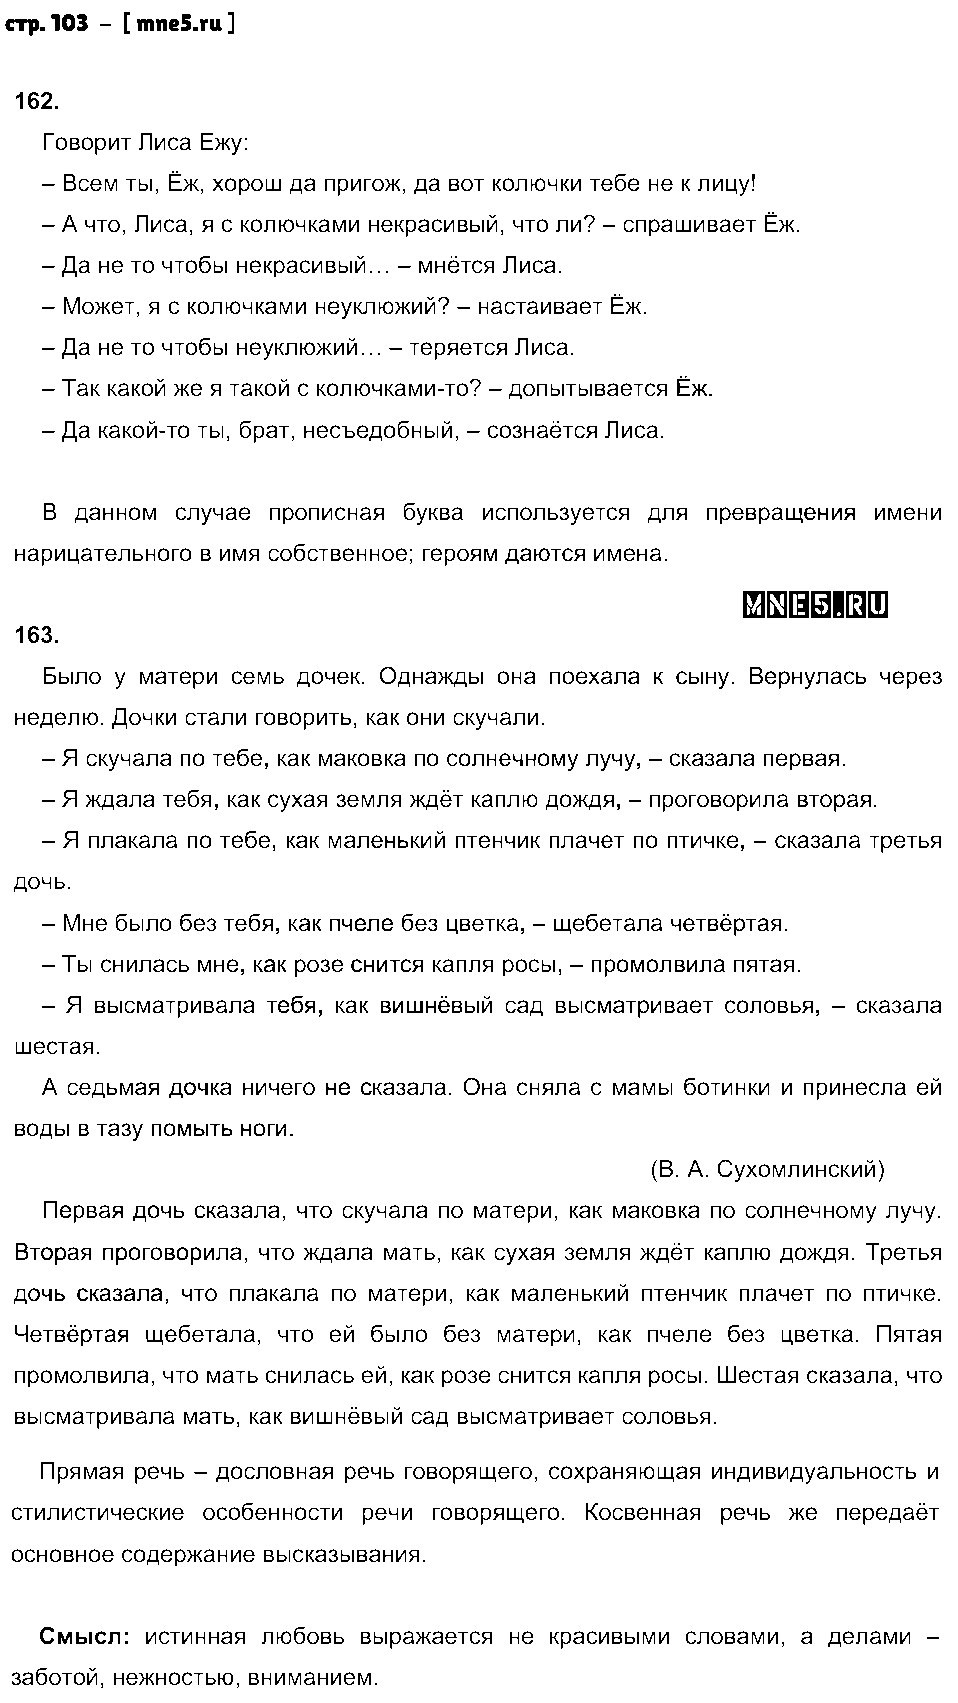 ГДЗ Русский язык 8 класс - стр. 103